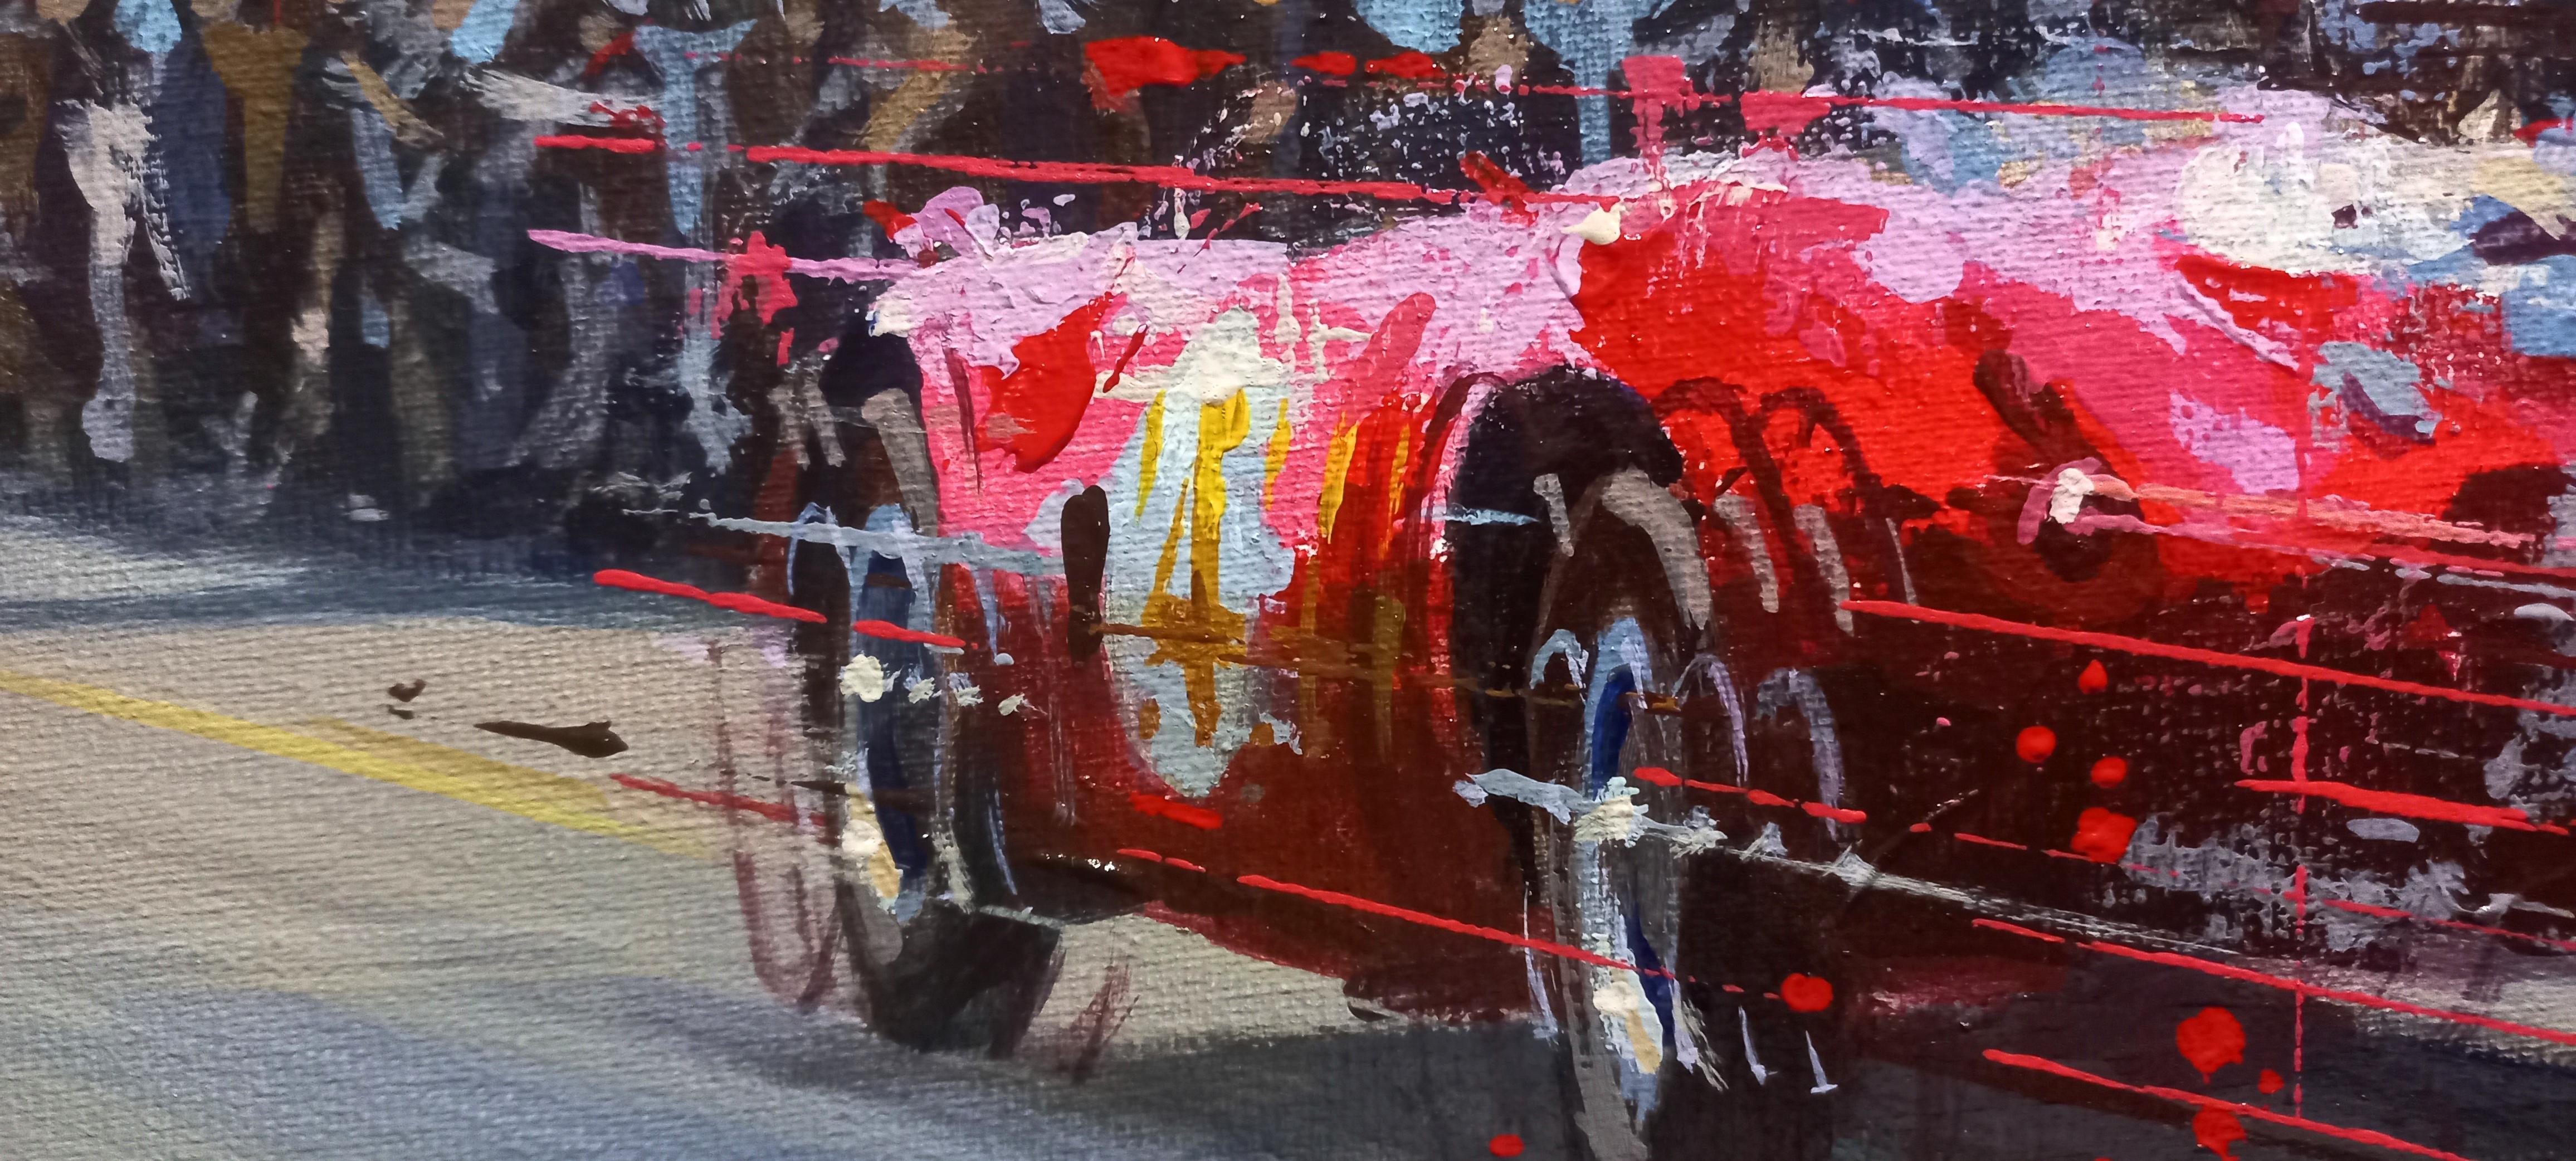 Balaguer 21.1  Le Mans 1954. Ferrari 375 Plus·  original paint 1